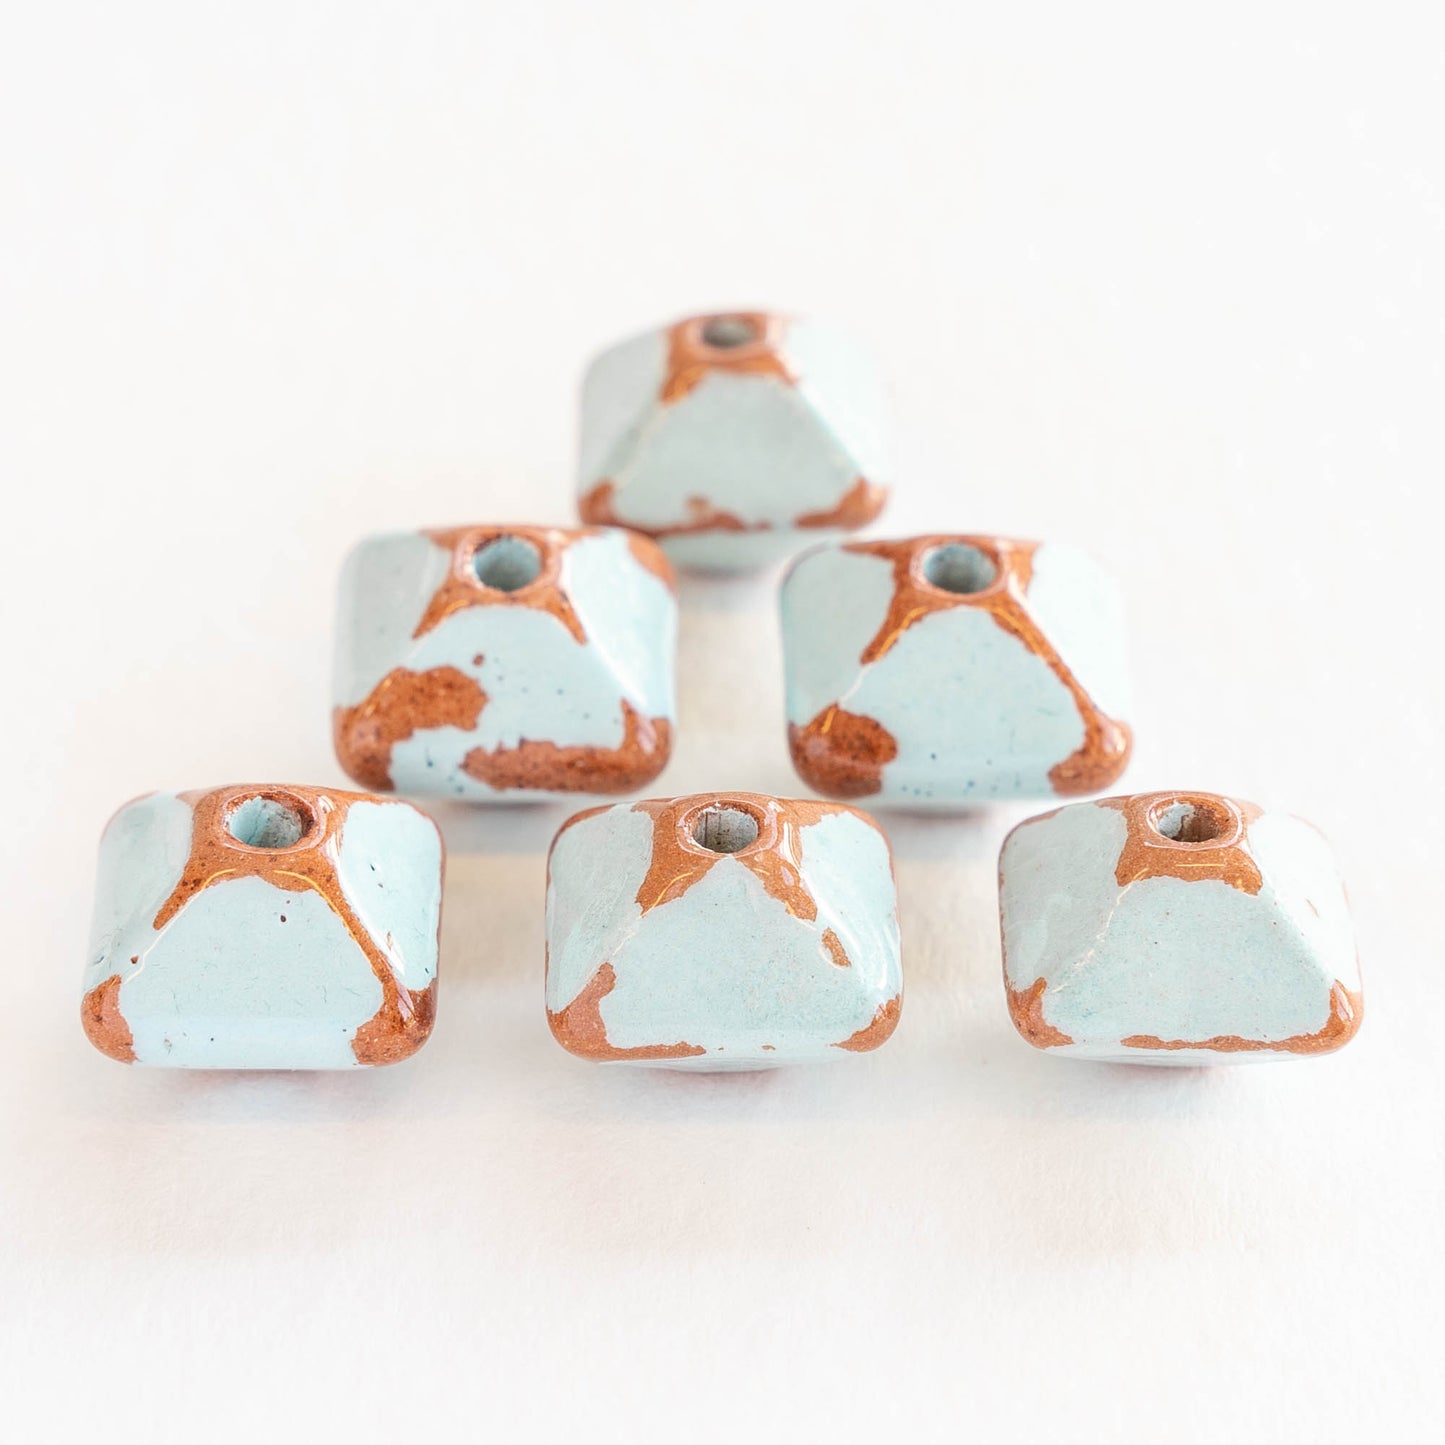 12x15mm Shiny Glazed Ceramic Octahedron Beads - Baby Blue - Choose Amount